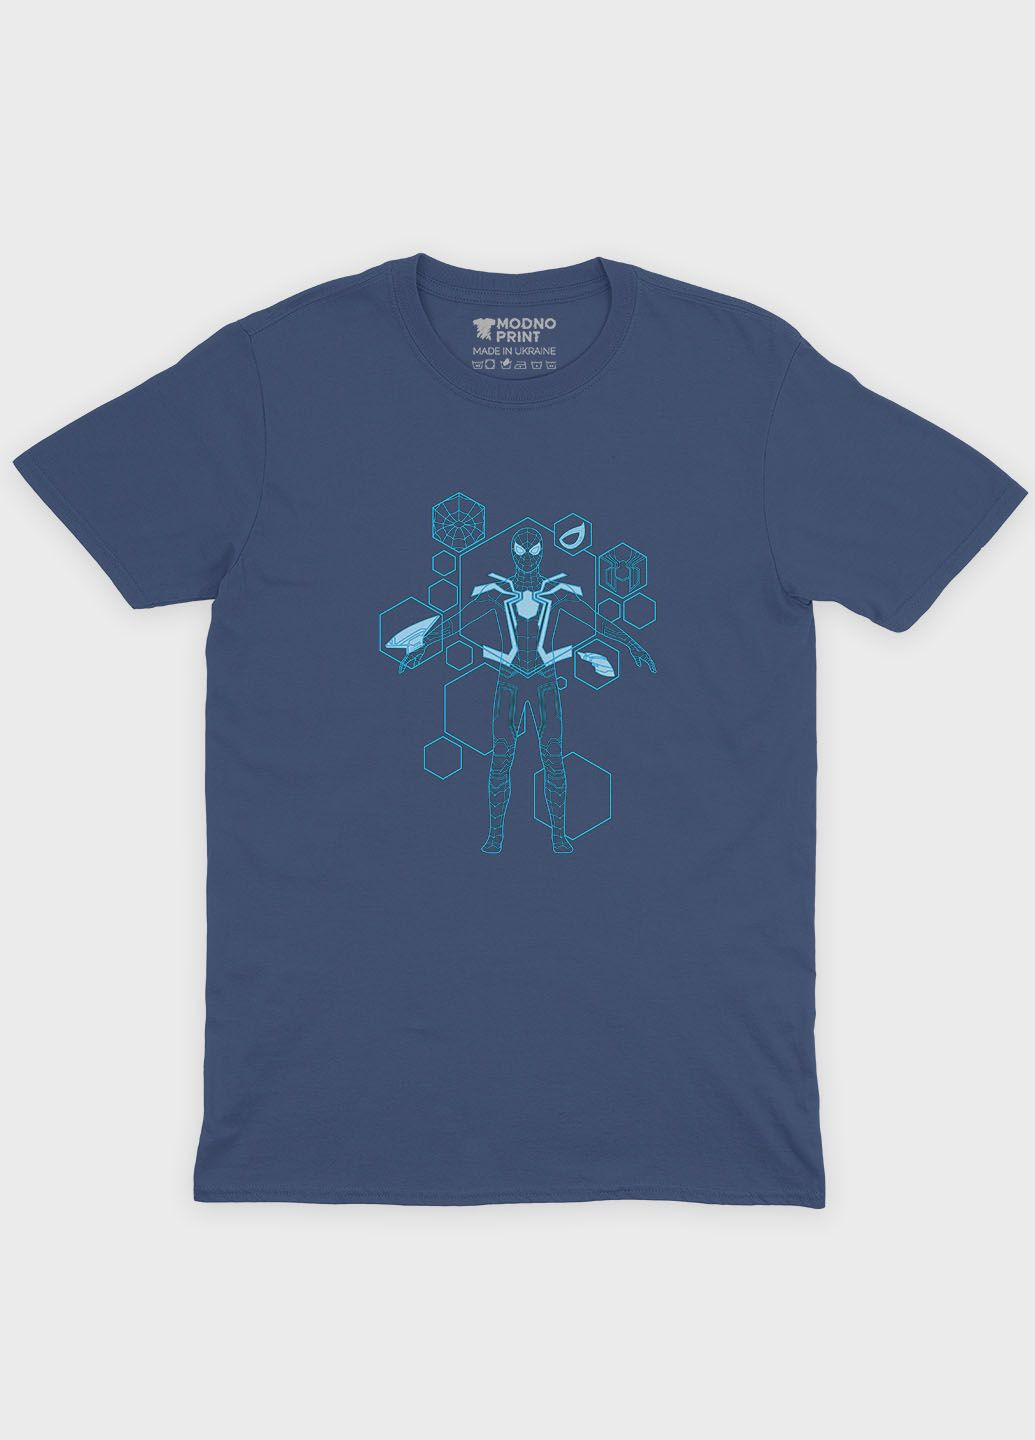 Темно-синяя демисезонная футболка для мальчика с принтом супергероя - человек-паук (ts001-1-nav-006-014-094-b) Modno